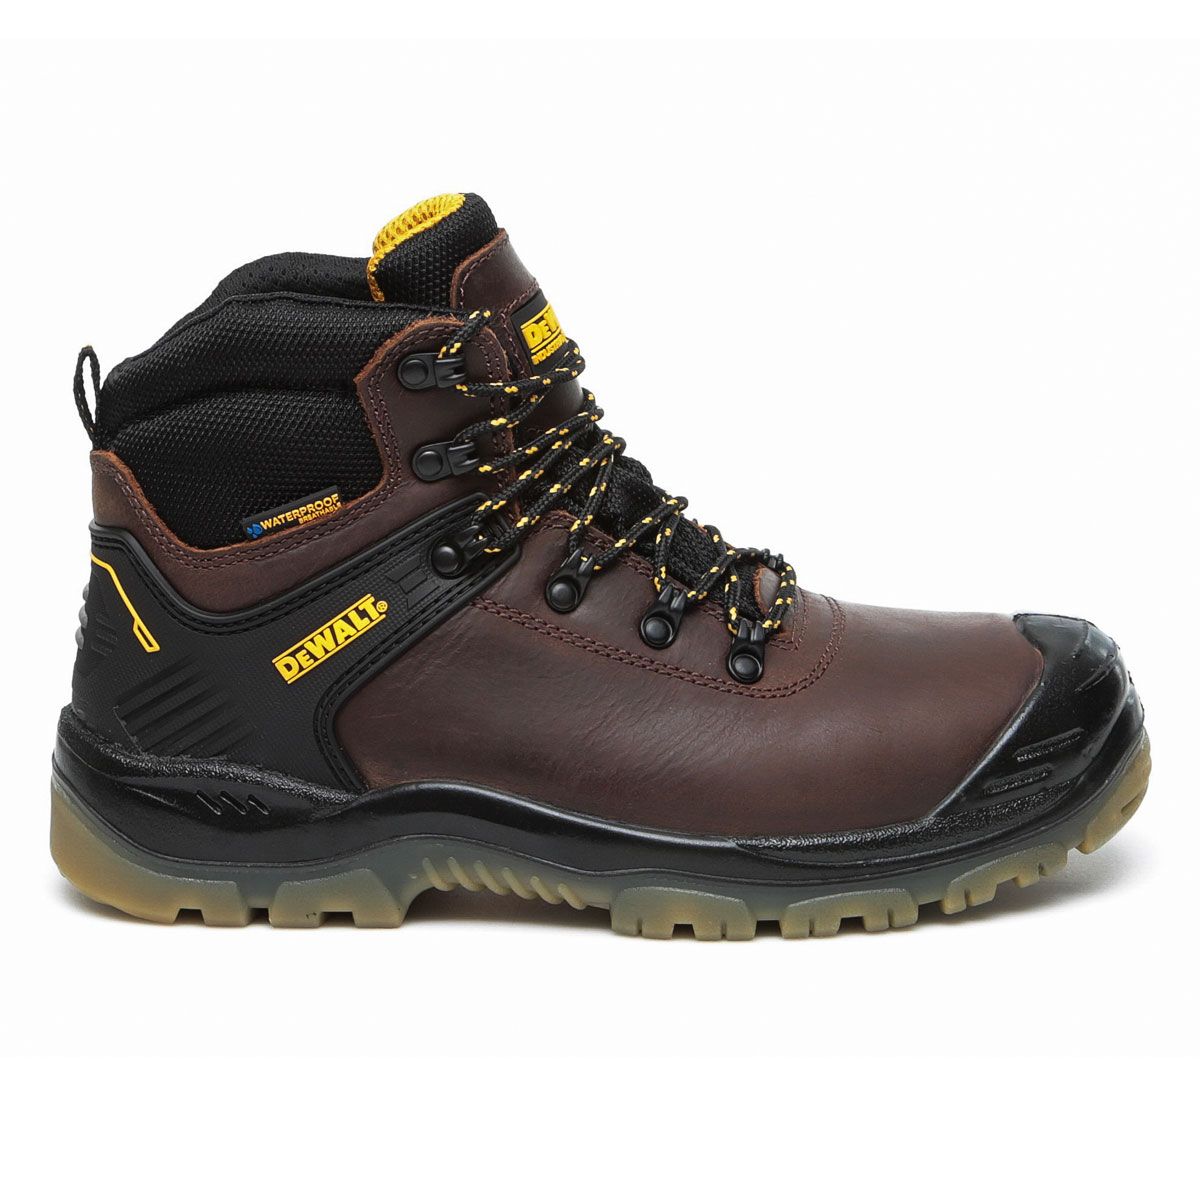 DeWalt Newark Men's Brown Safety boots, Size 9